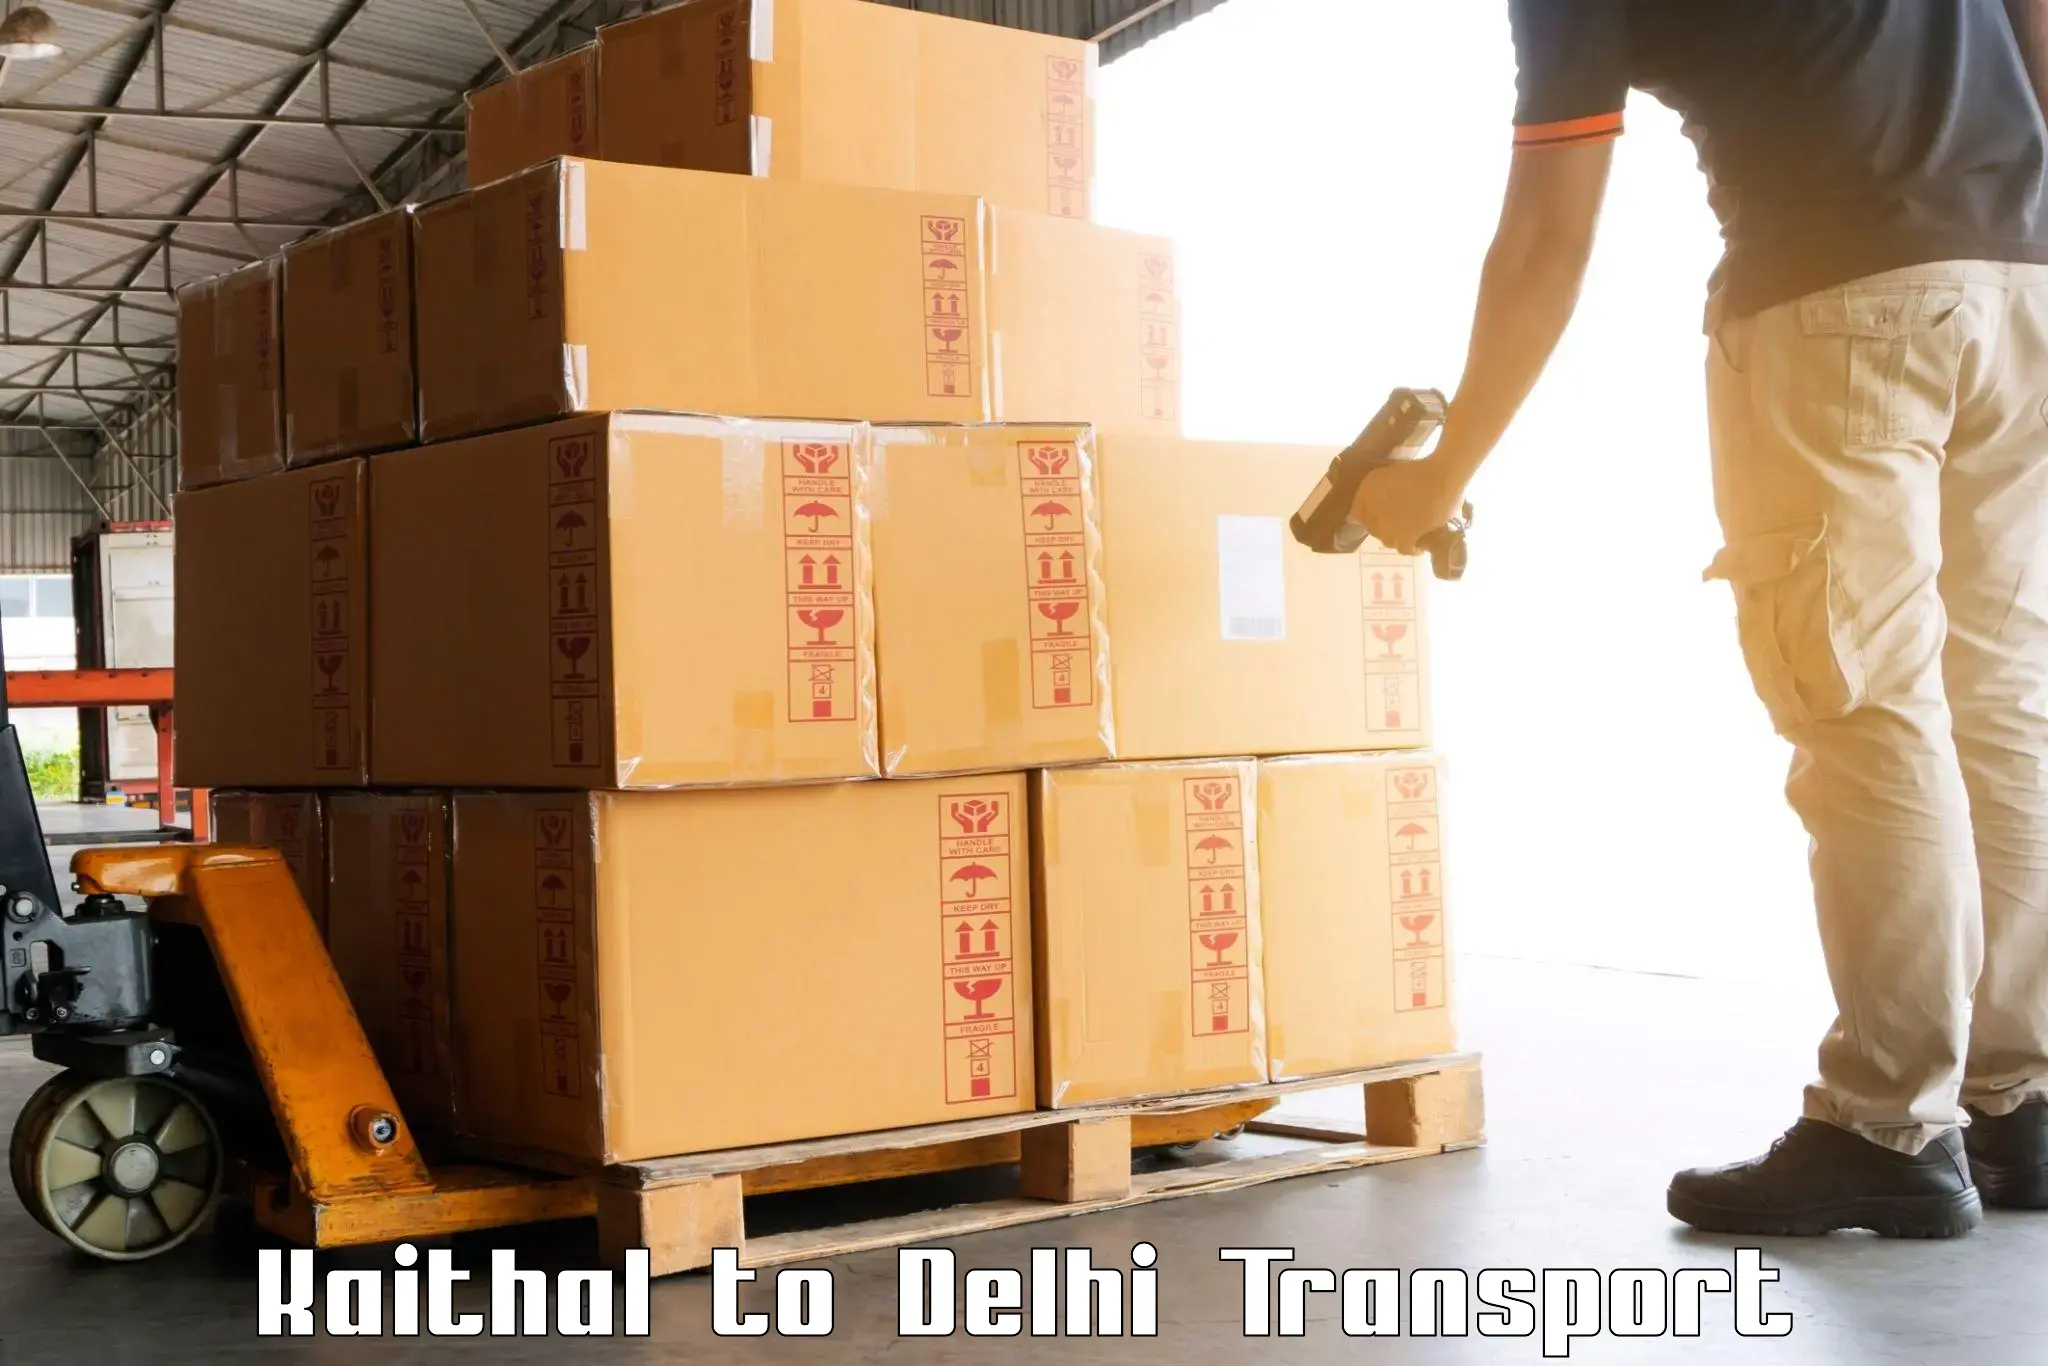 Daily parcel service transport Kaithal to Jamia Millia Islamia New Delhi